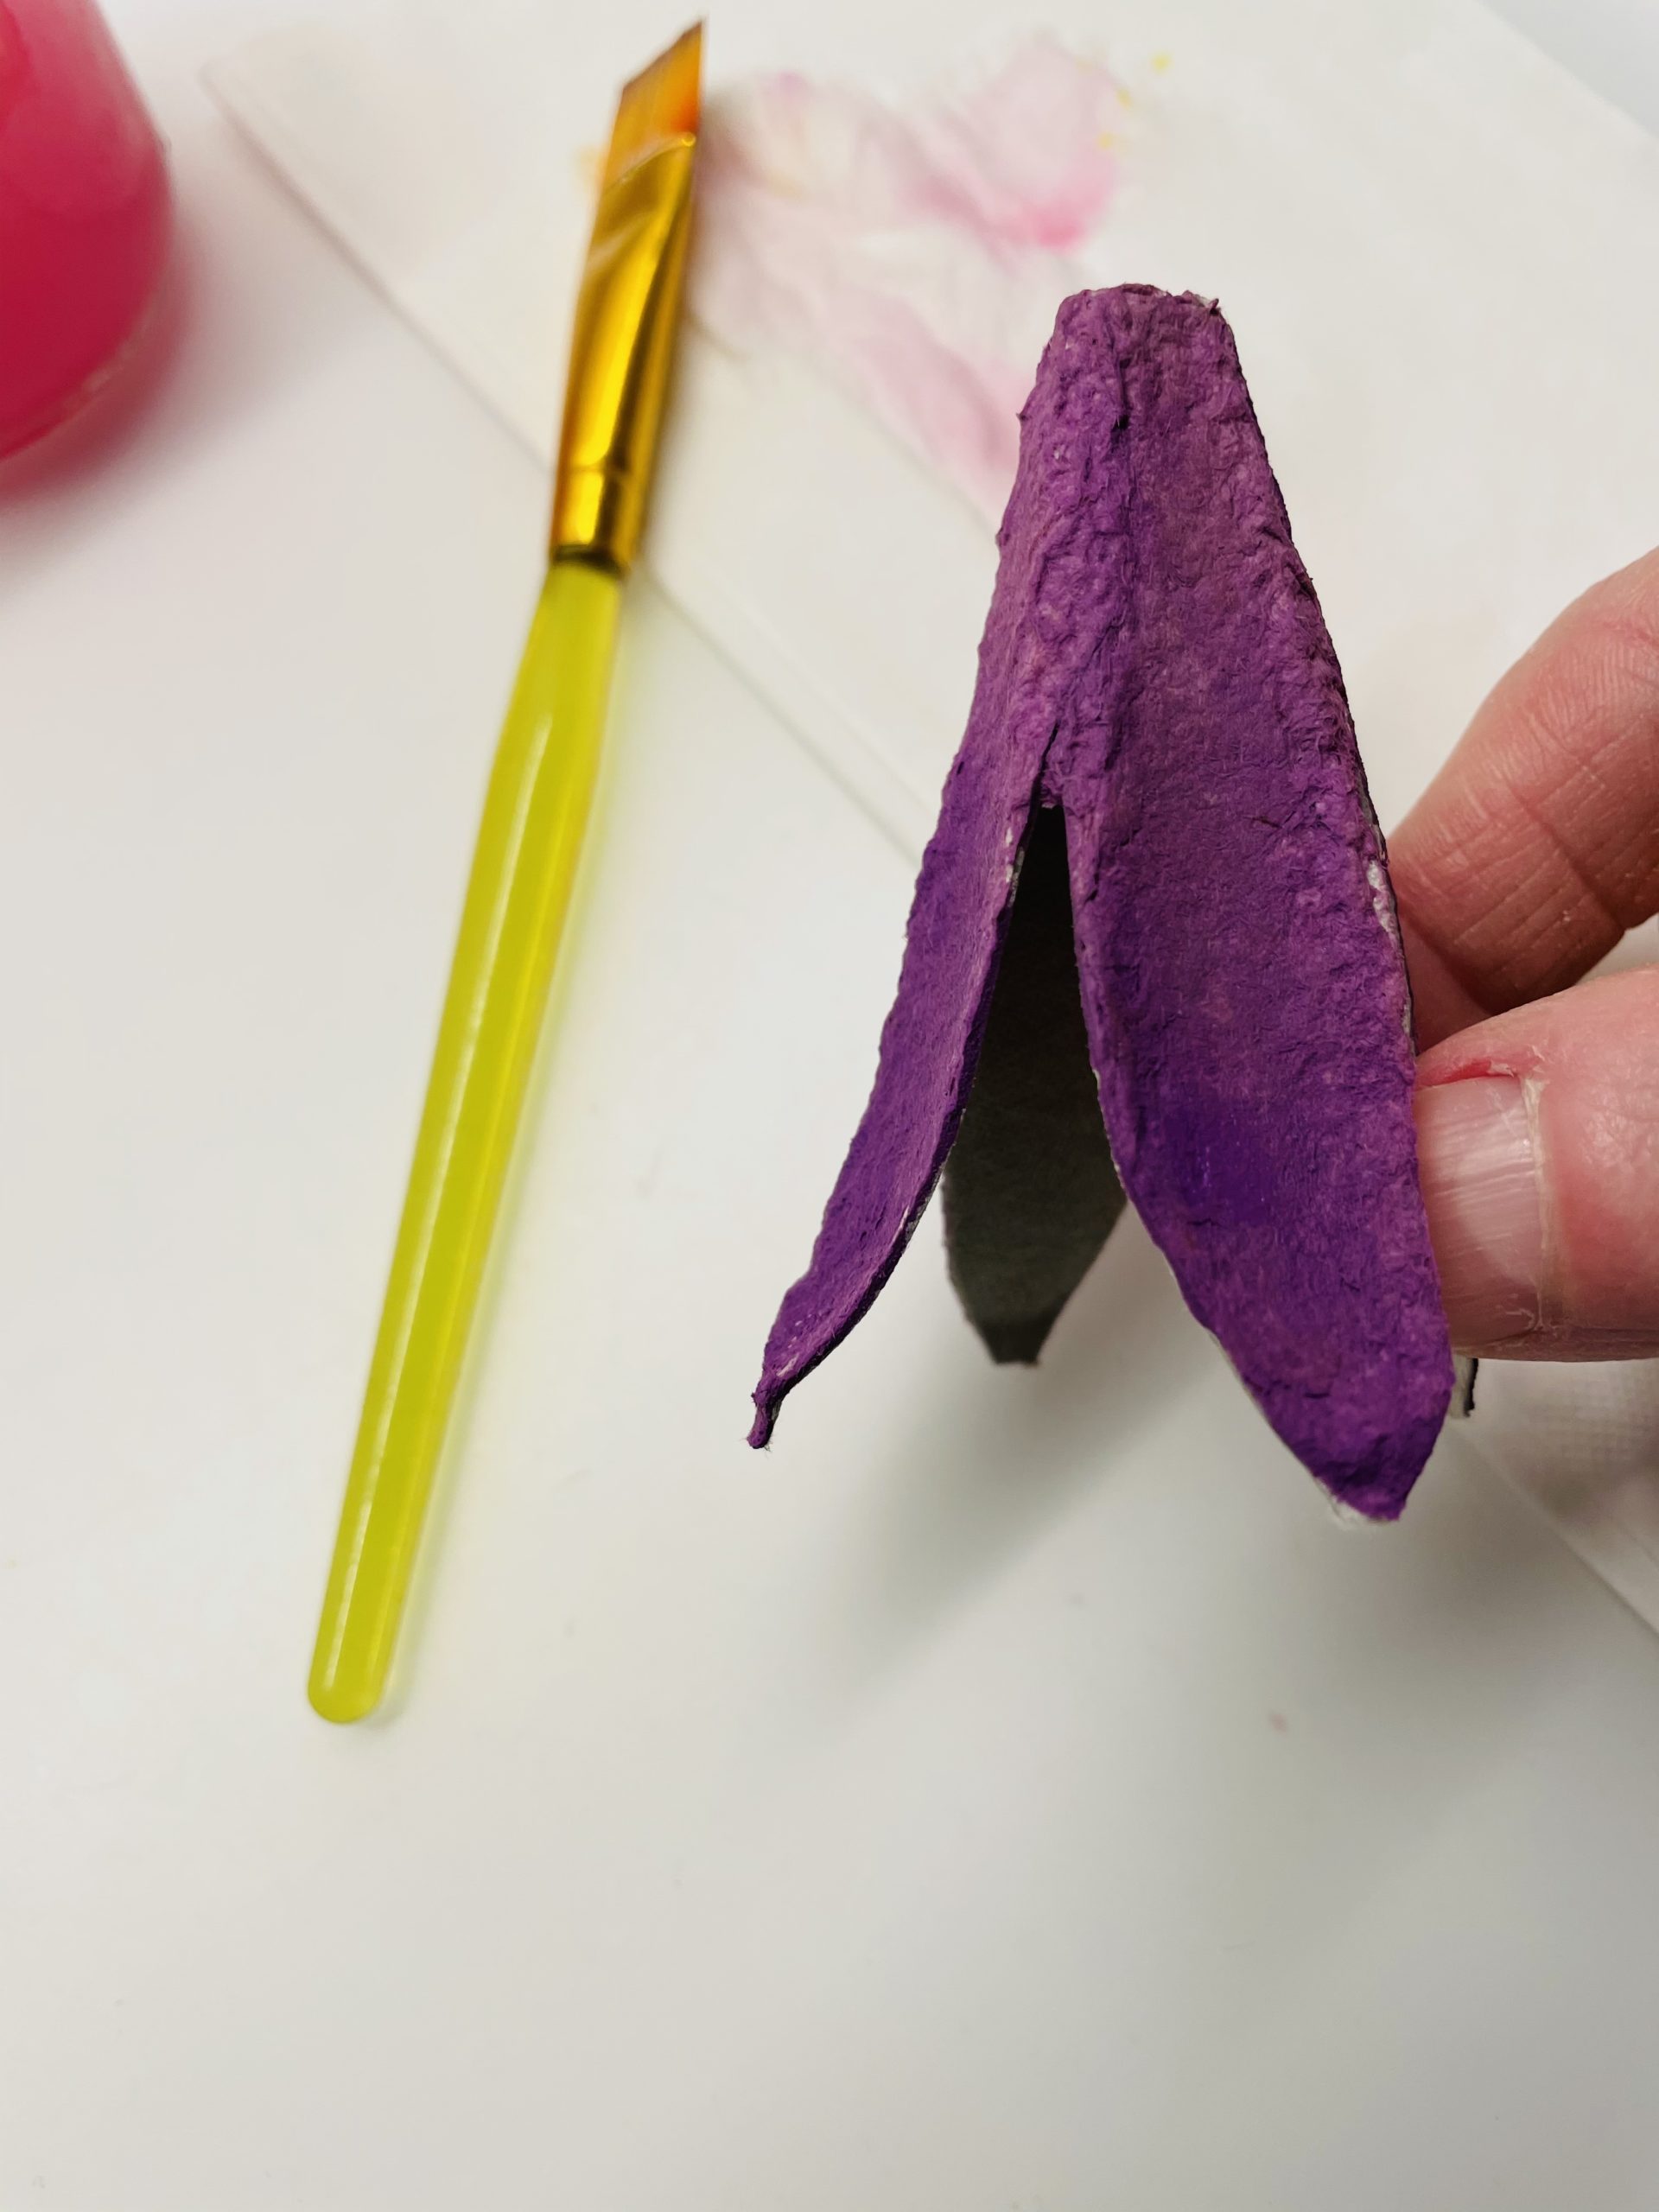 Bild zum Schritt 15 für das Bastel- und DIY-Abenteuer für Kinder: 'Bemalt nun auch diese mit Wasserfarben.'